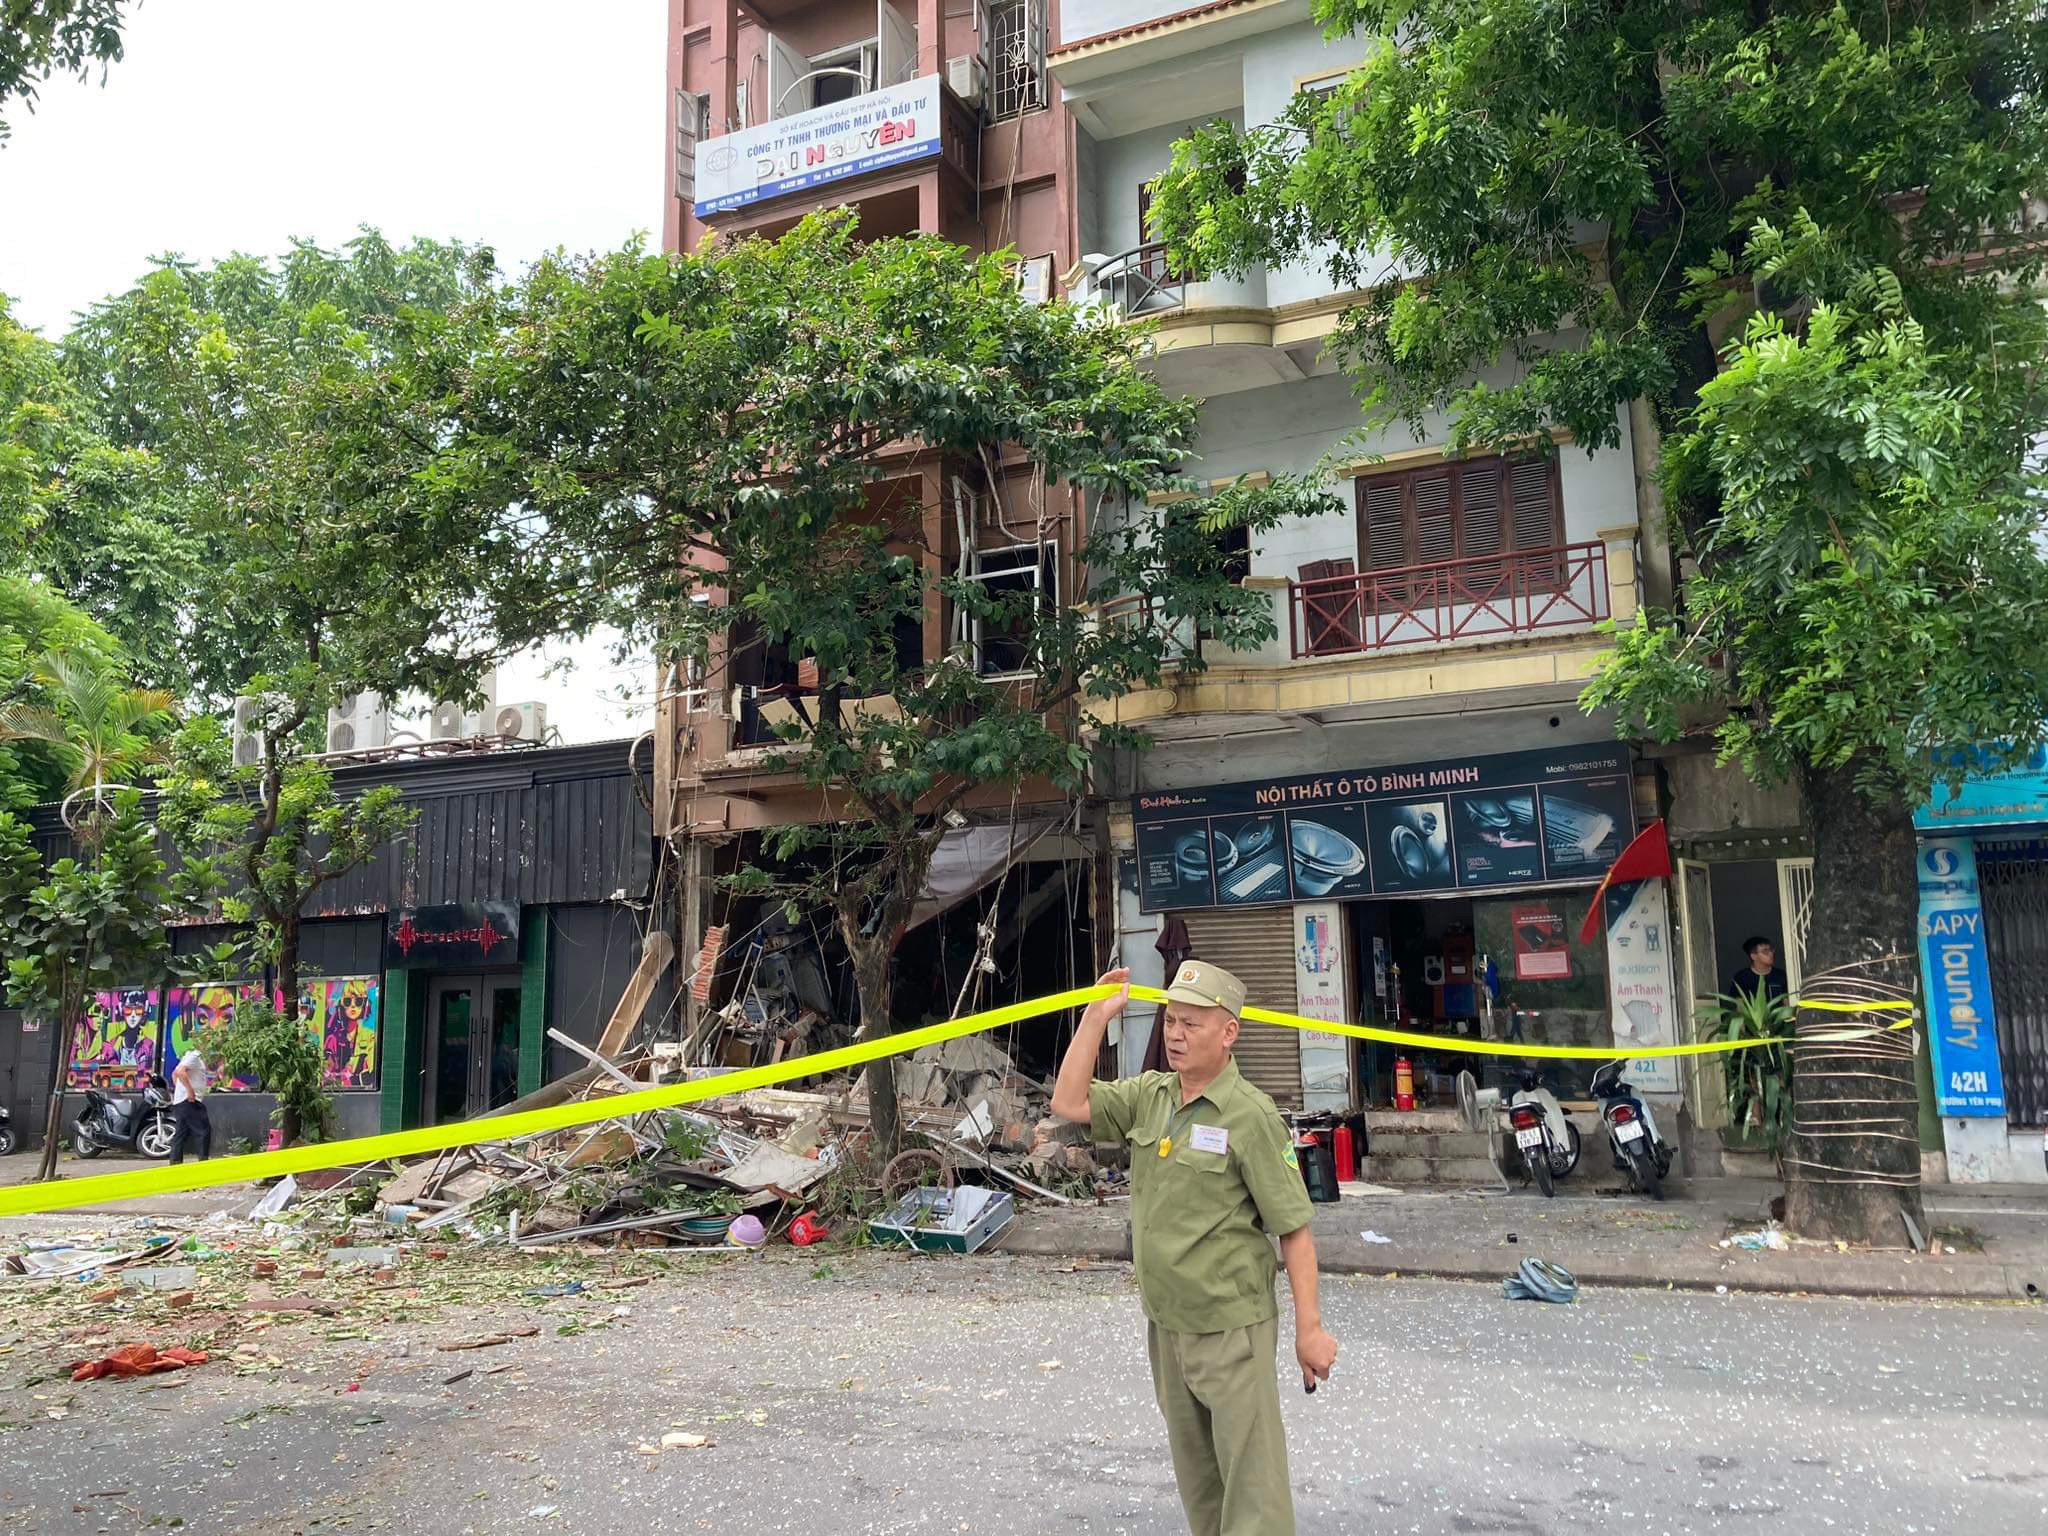 Hiện trường tan hoang sau vụ nổ lớn ở Hà Nội - 9